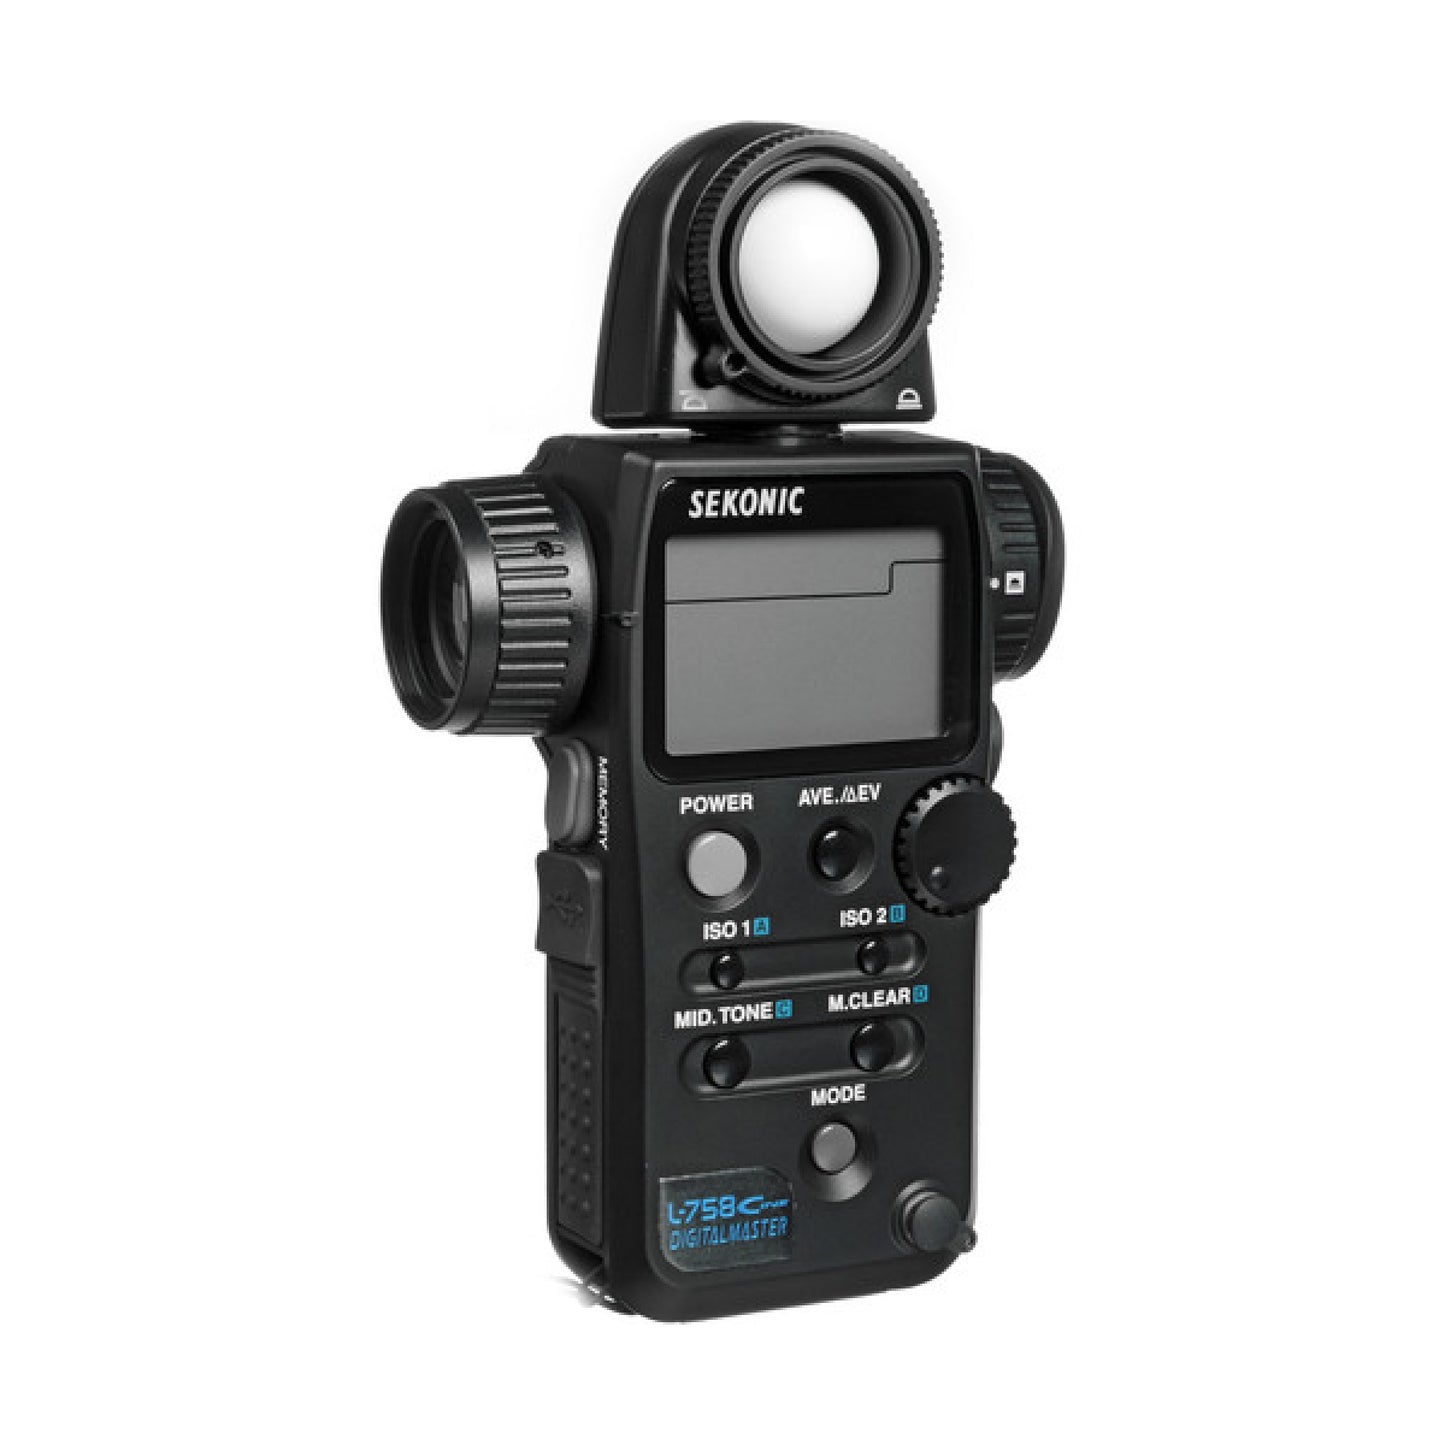 Sekonic L-758 Cine Digital Master Lightmeter for hire